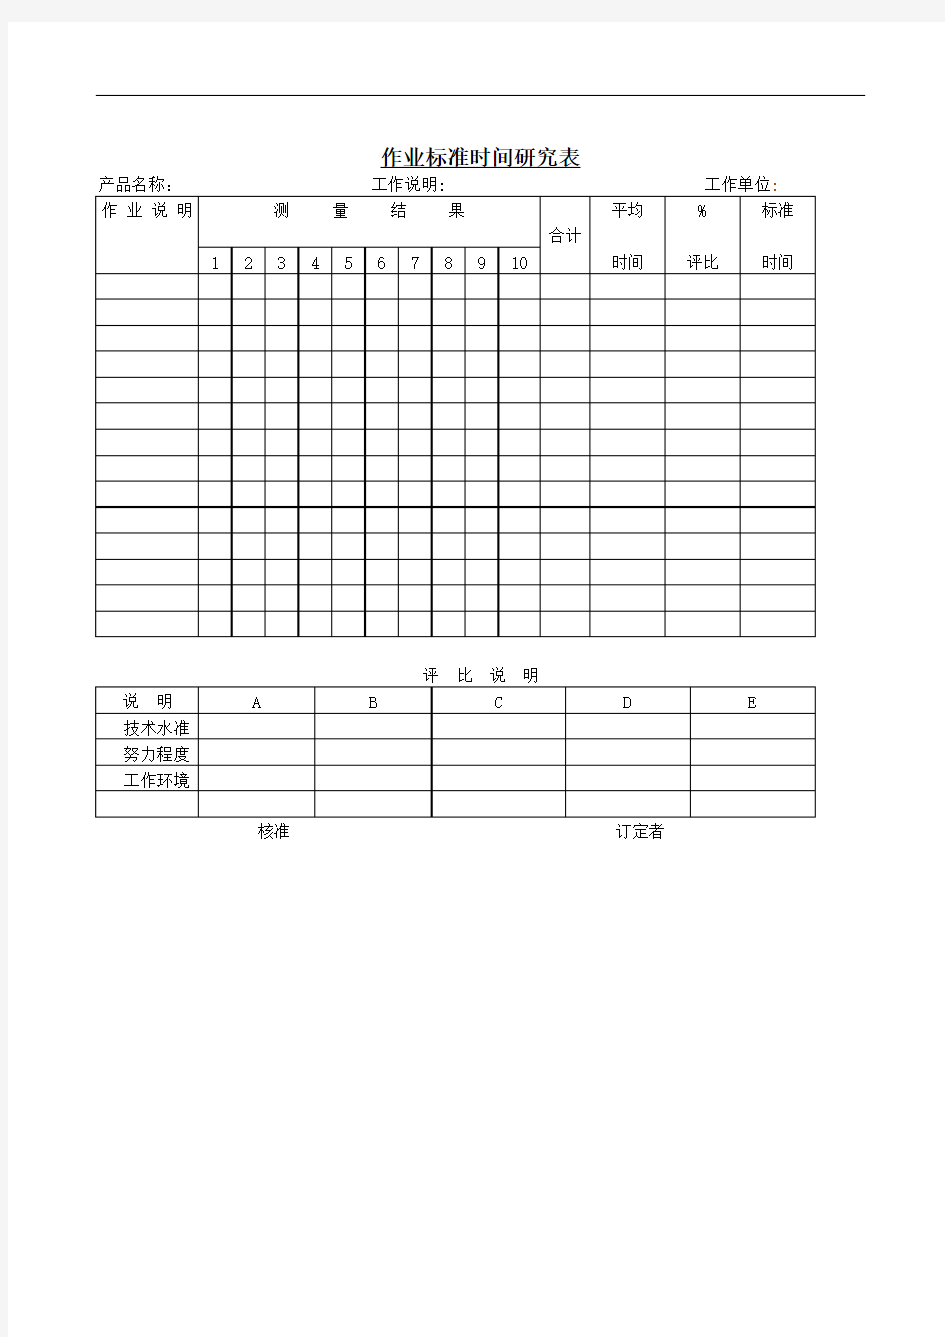 作业标准时间研究表.